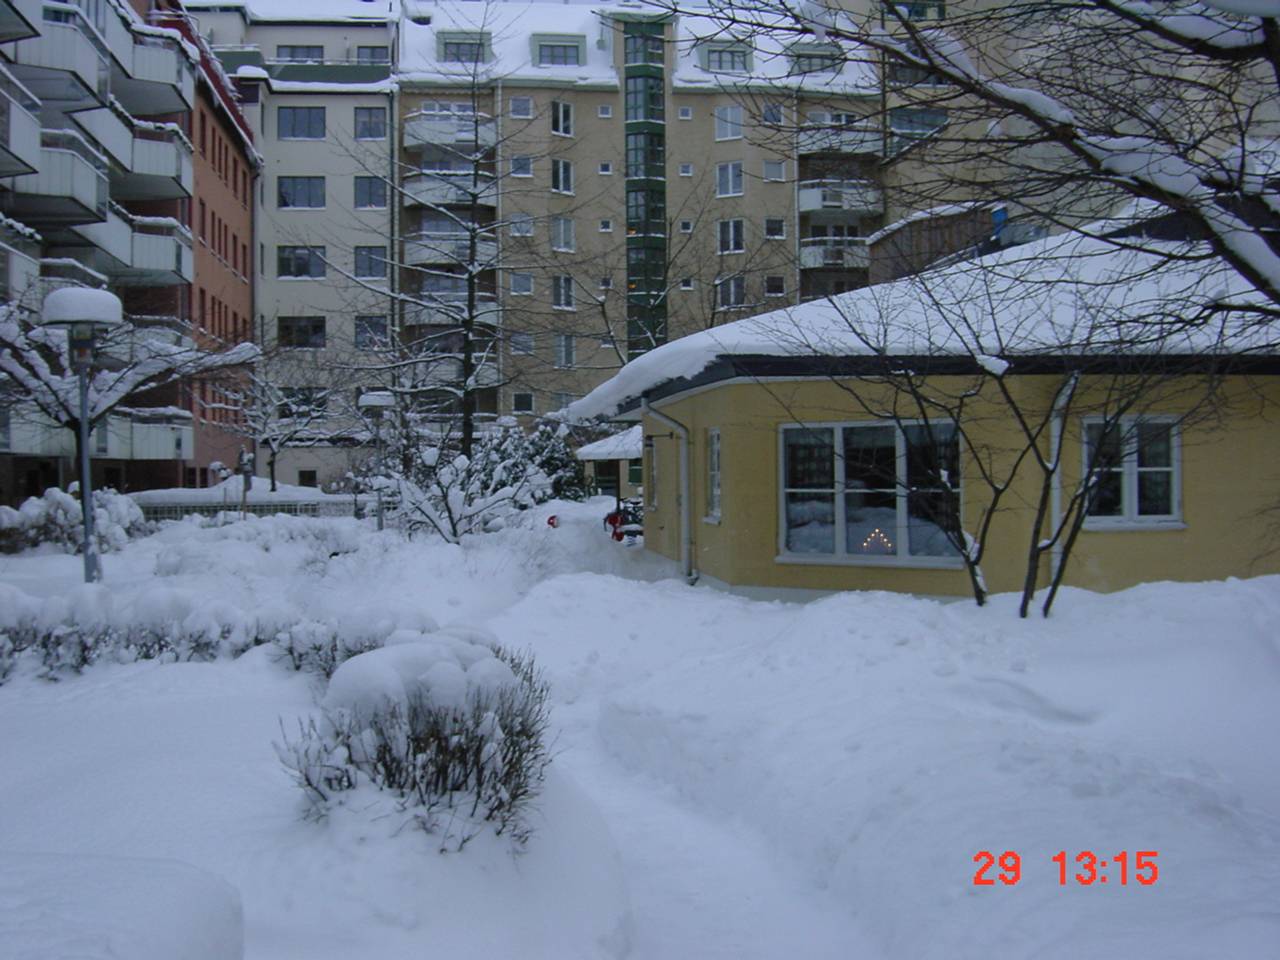 snö på en gård i Vasastan 29:e dec 2001